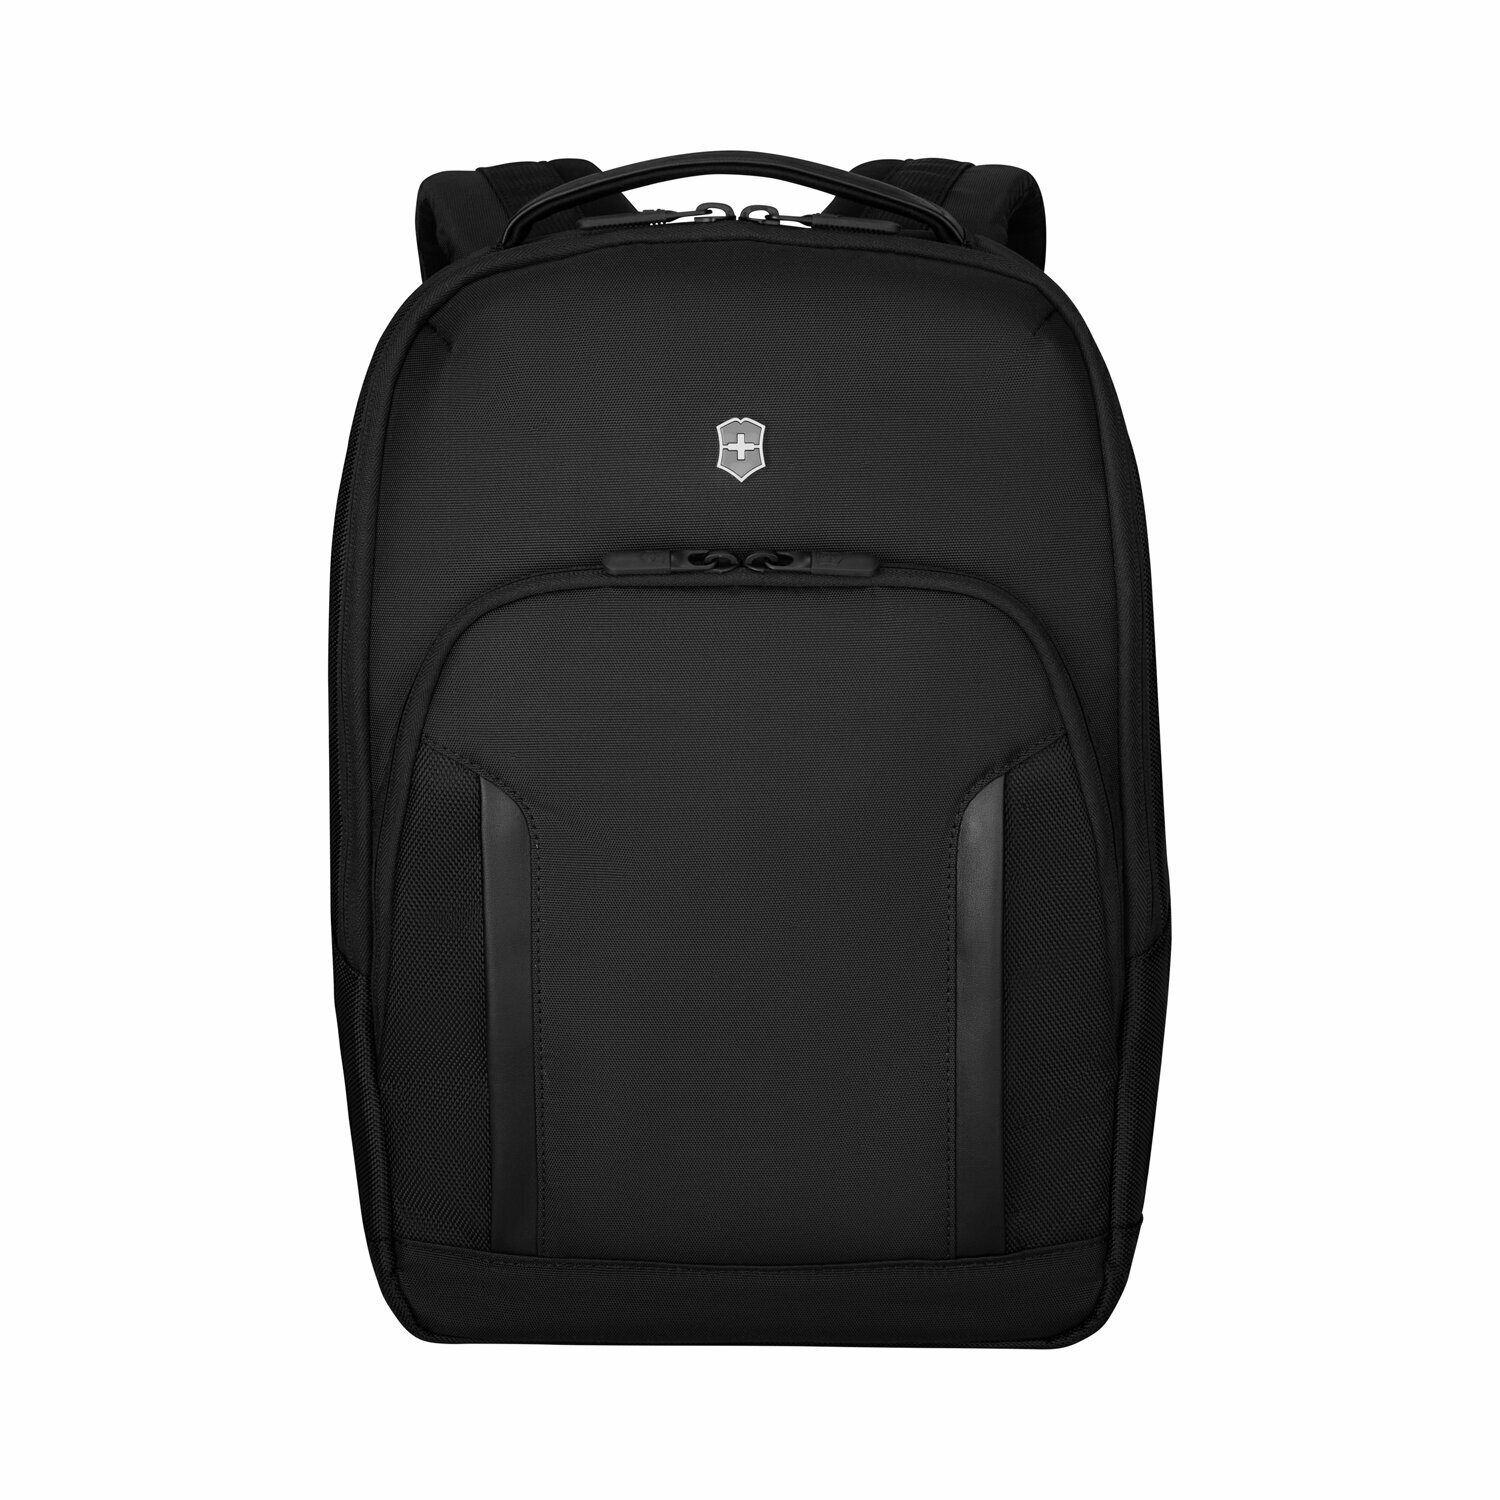 Рюкзак VICTORINOX Altmont Professional City Laptop 14", чёрный, полиэфирная ткань, 27x15x40 см,14 л, 612253